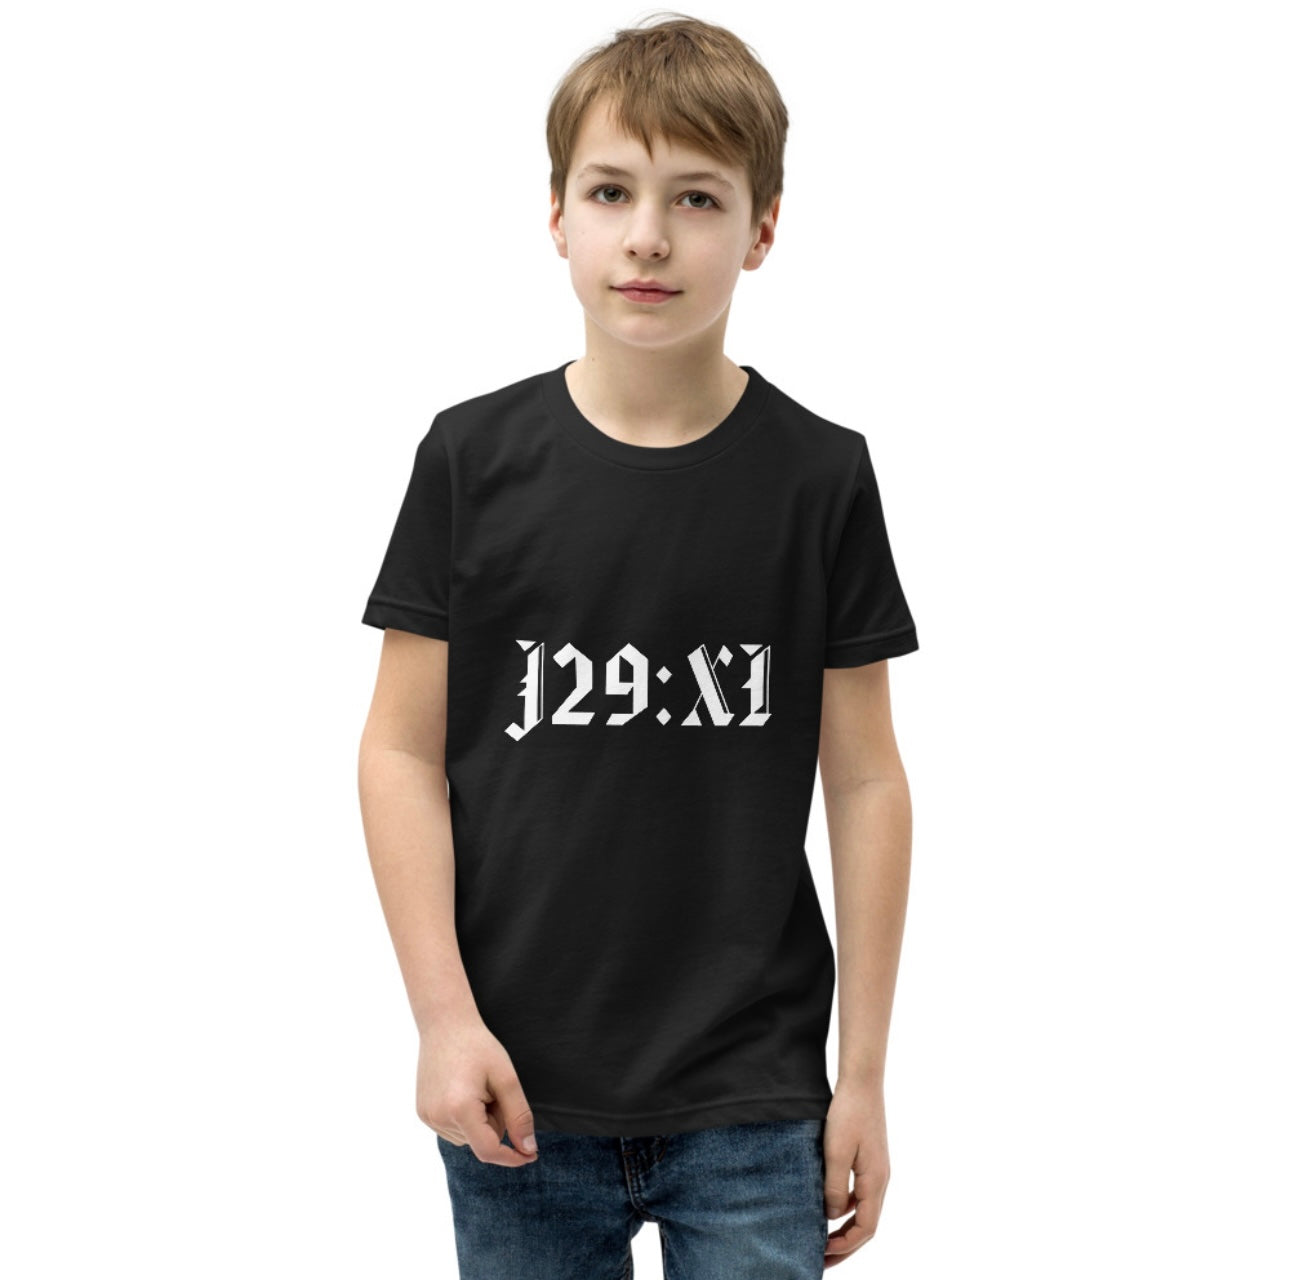 J29:XI Youth Logo Tshirt